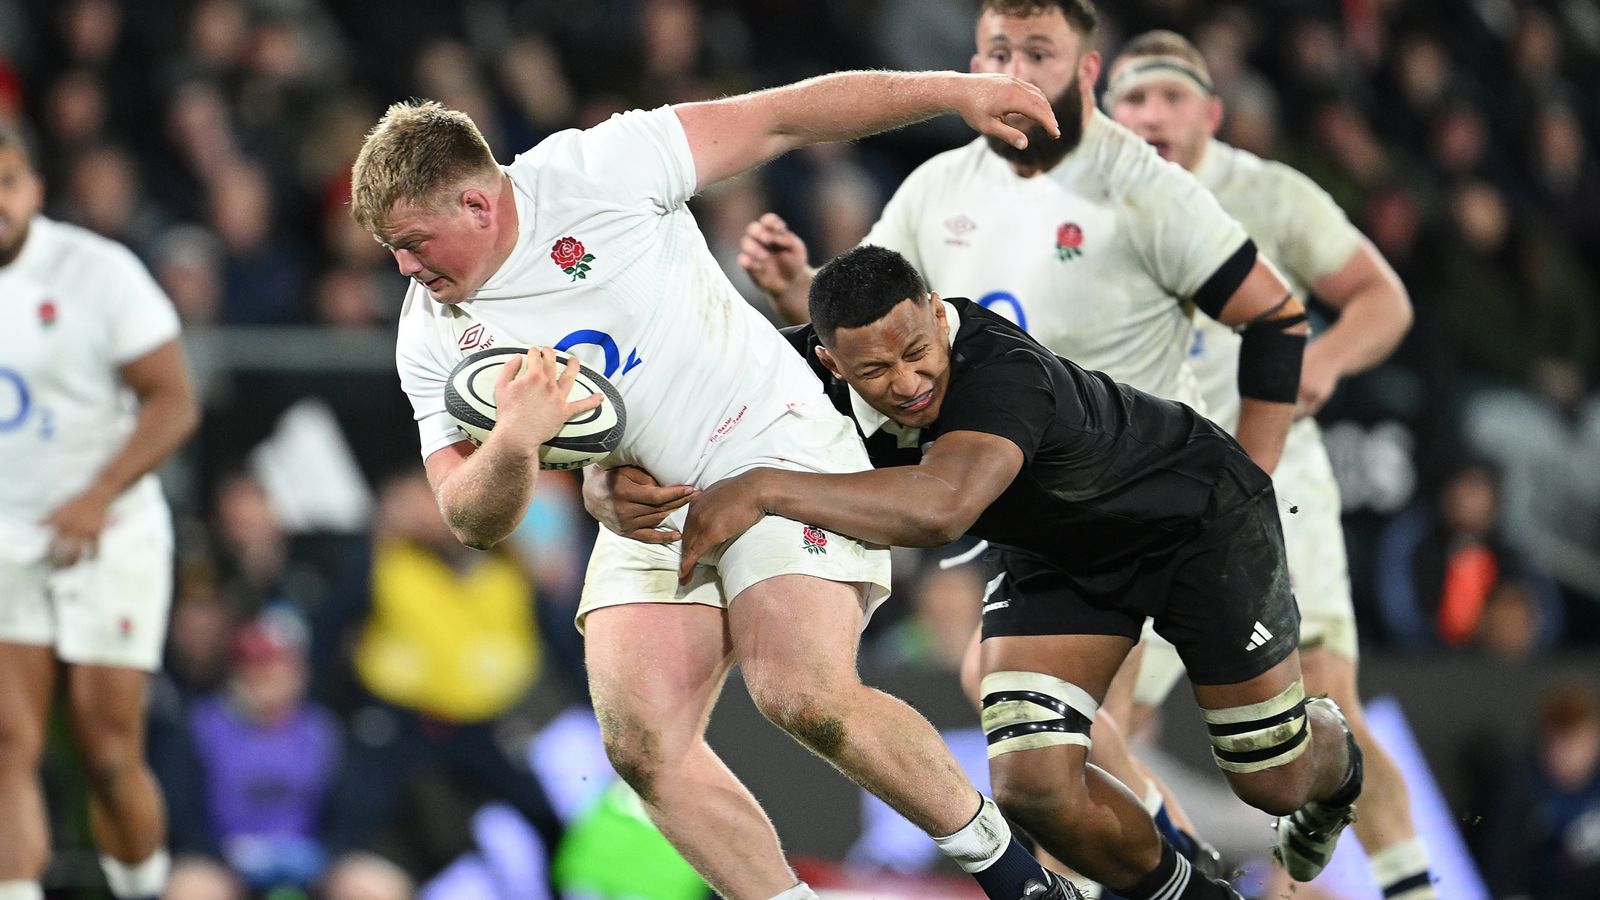 Nueva Zelanda vs Inglaterra: Fin Baxter reemplaza al lesionado Joe Marler en el único cambio de los turistas para la segunda prueba | Noticias de Rugby Union